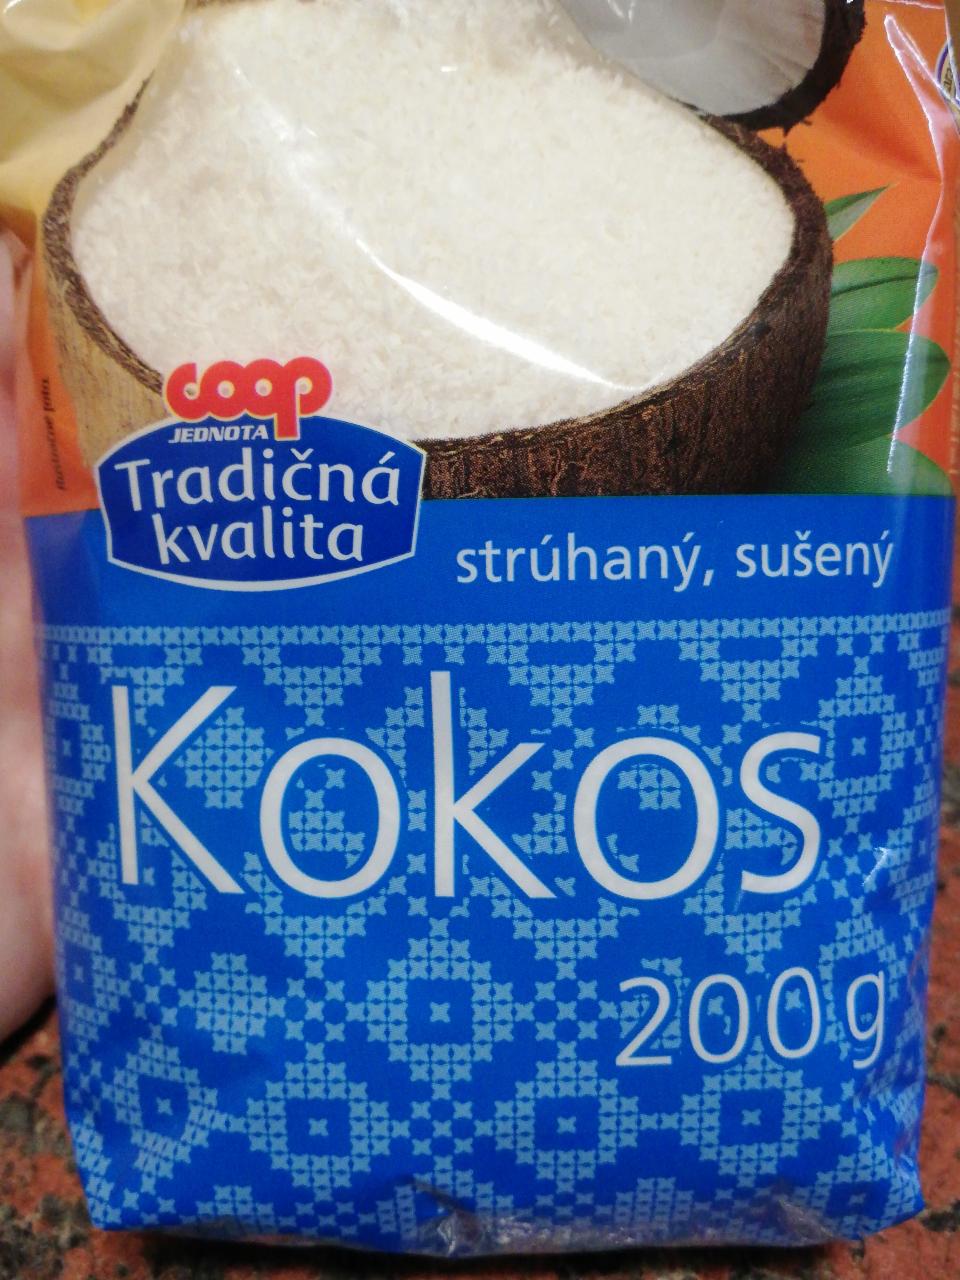 Fotografie - Kokos strúhaný, sušený Coop Tradičná kvalita